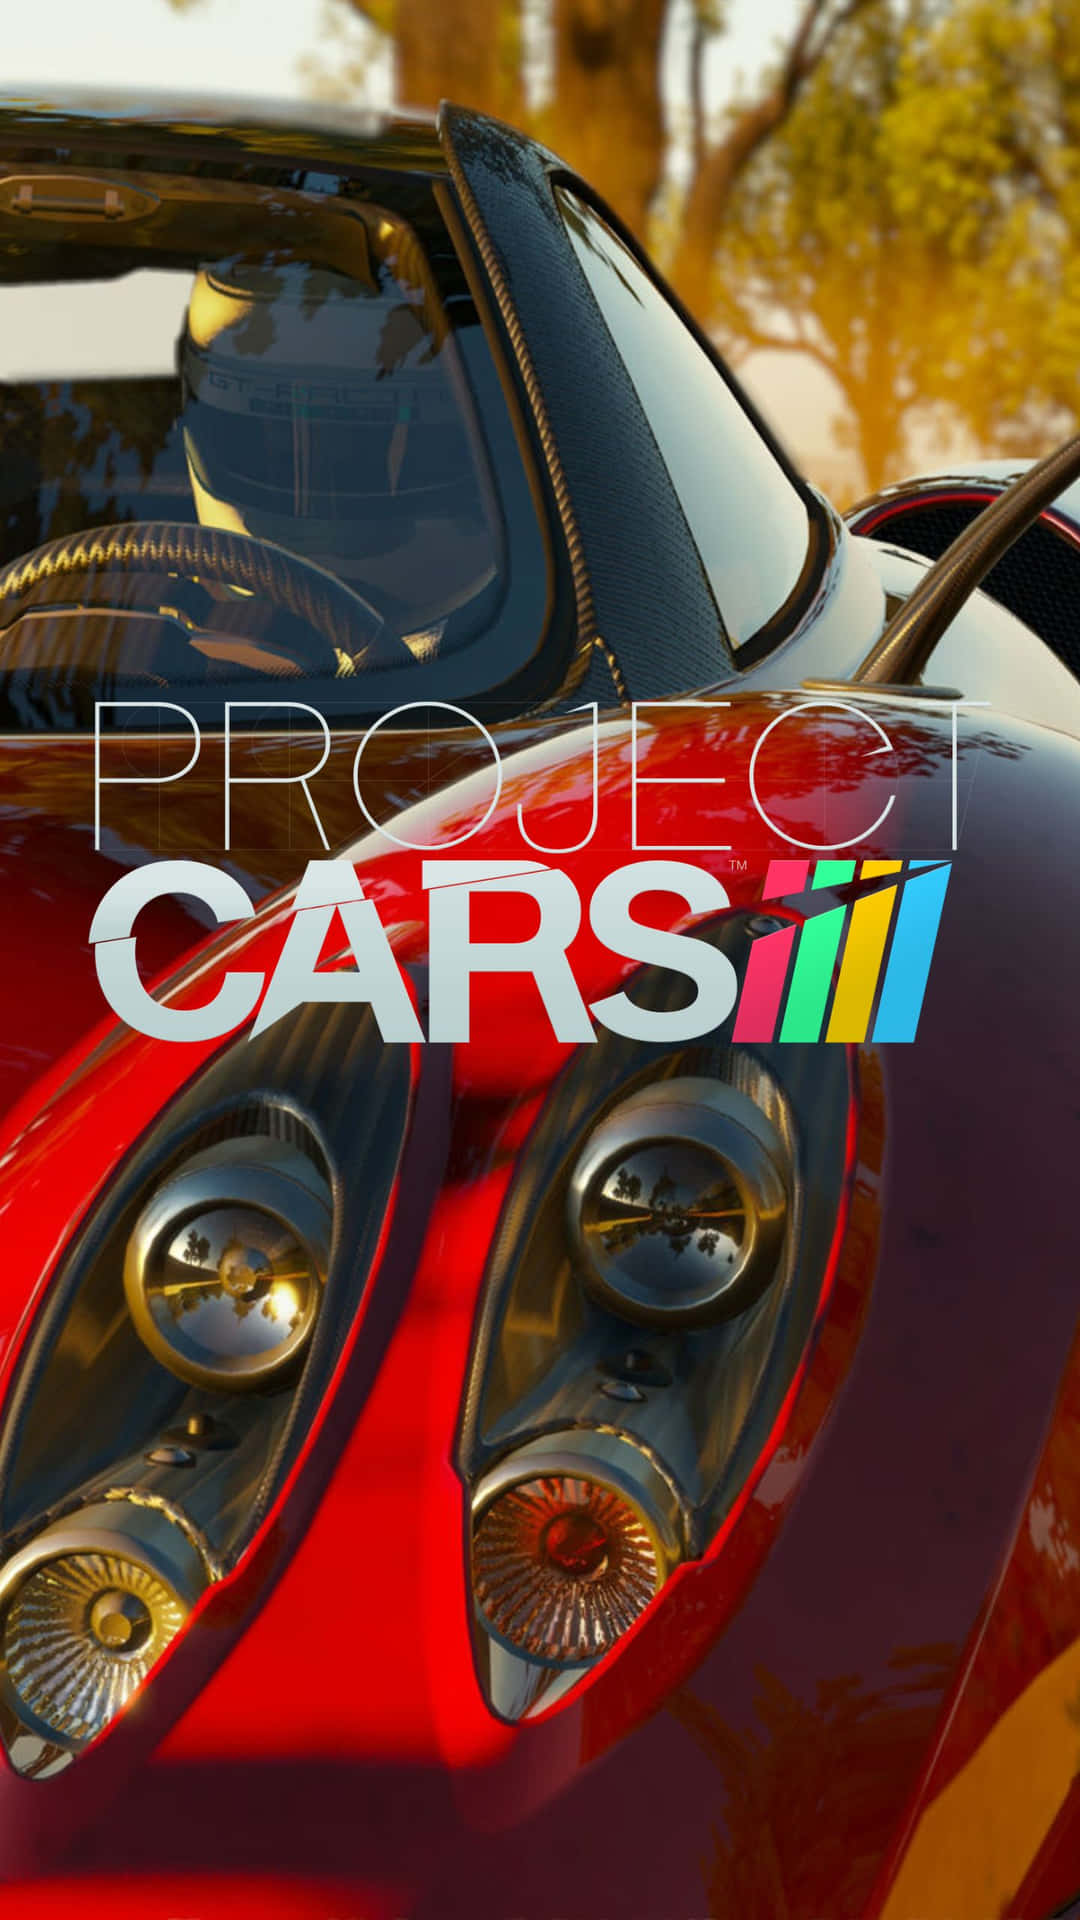 Portala Tua Esperienza Con Project Cars Al Livello Successivo Con Un Dispositivo Android